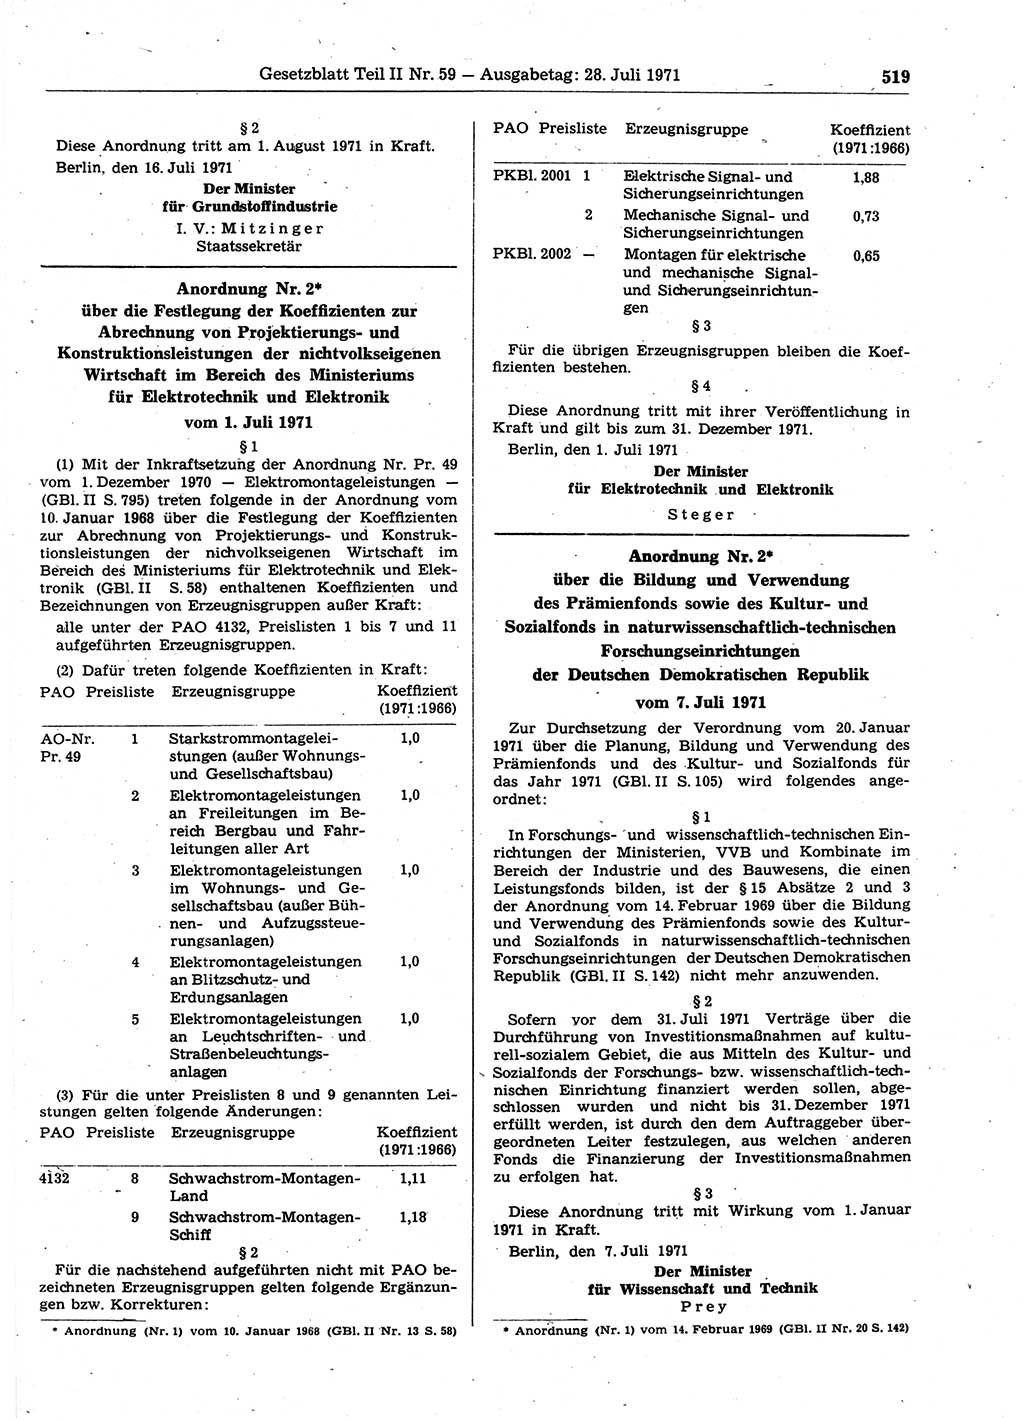 Gesetzblatt (GBl.) der Deutschen Demokratischen Republik (DDR) Teil ⅠⅠ 1971, Seite 519 (GBl. DDR ⅠⅠ 1971, S. 519)